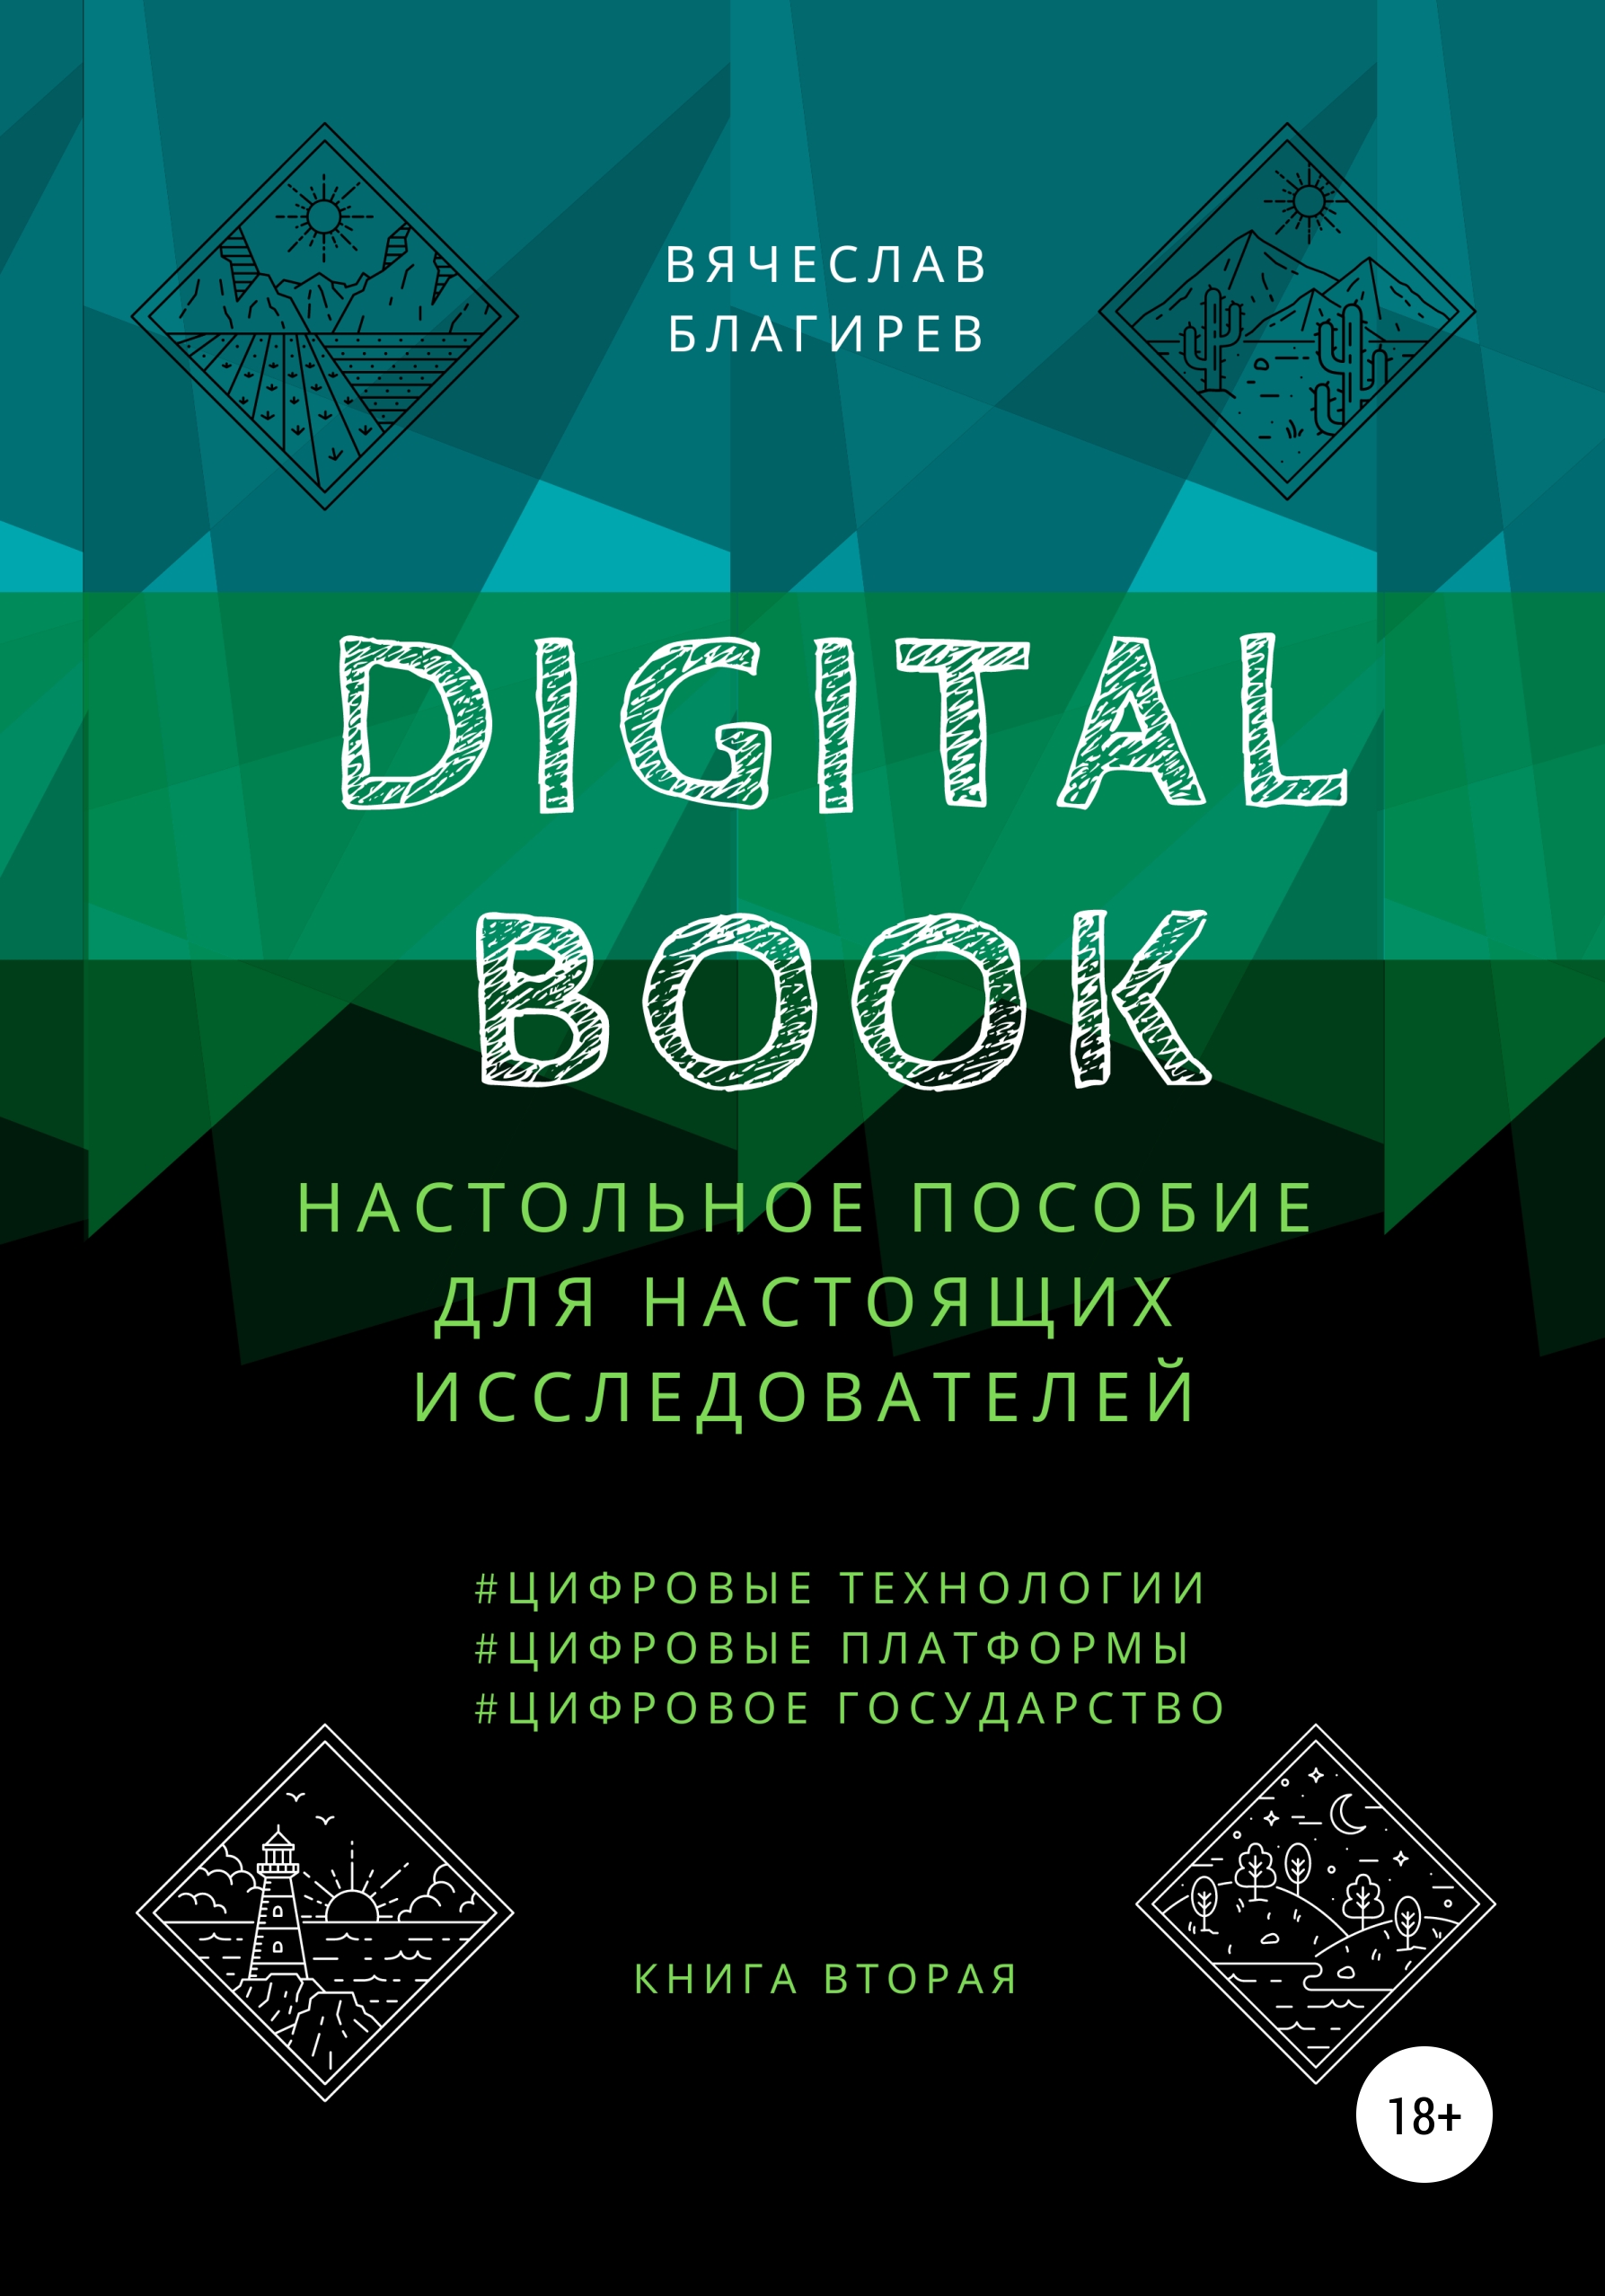 Книга  Digital Book. Книга вторая созданная Вячеслав Благирев может относится к жанру просто о бизнесе. Стоимость электронной книги Digital Book. Книга вторая с идентификатором 66597448 составляет 439.00 руб.